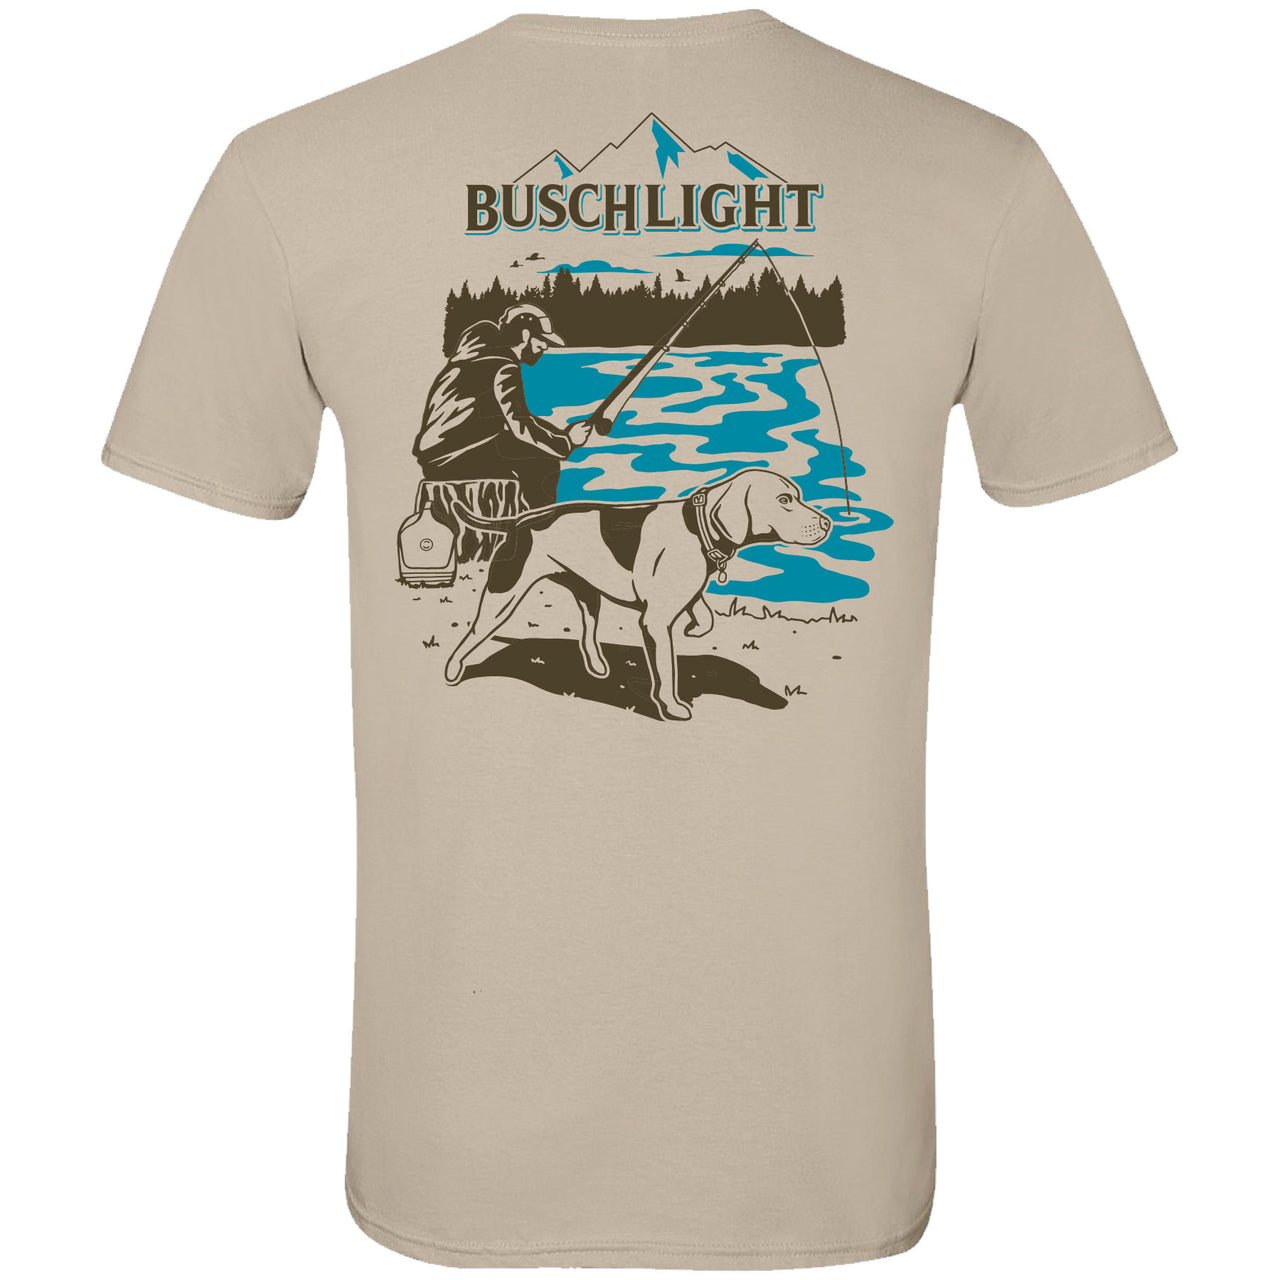 Busch Light - Man's Best Fishing Companion - 2-sided T-shirt